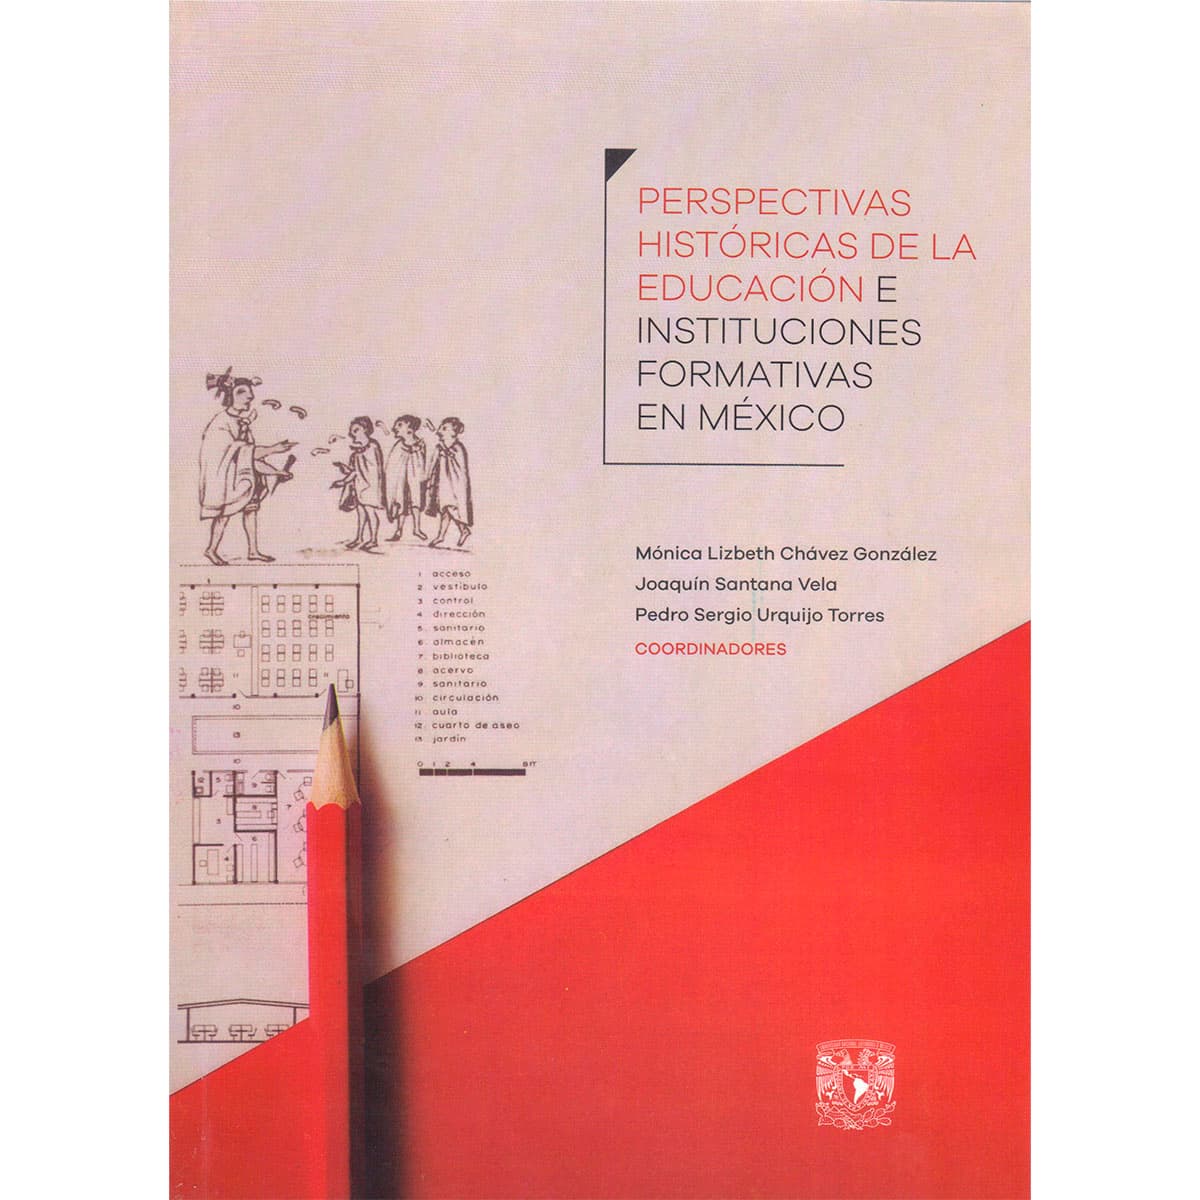 PERSPECTIVAS HISTÓRICAS DE LA EDUCACIÓN E INSTITUCIONES FORMATIVAS EN MÉXICO